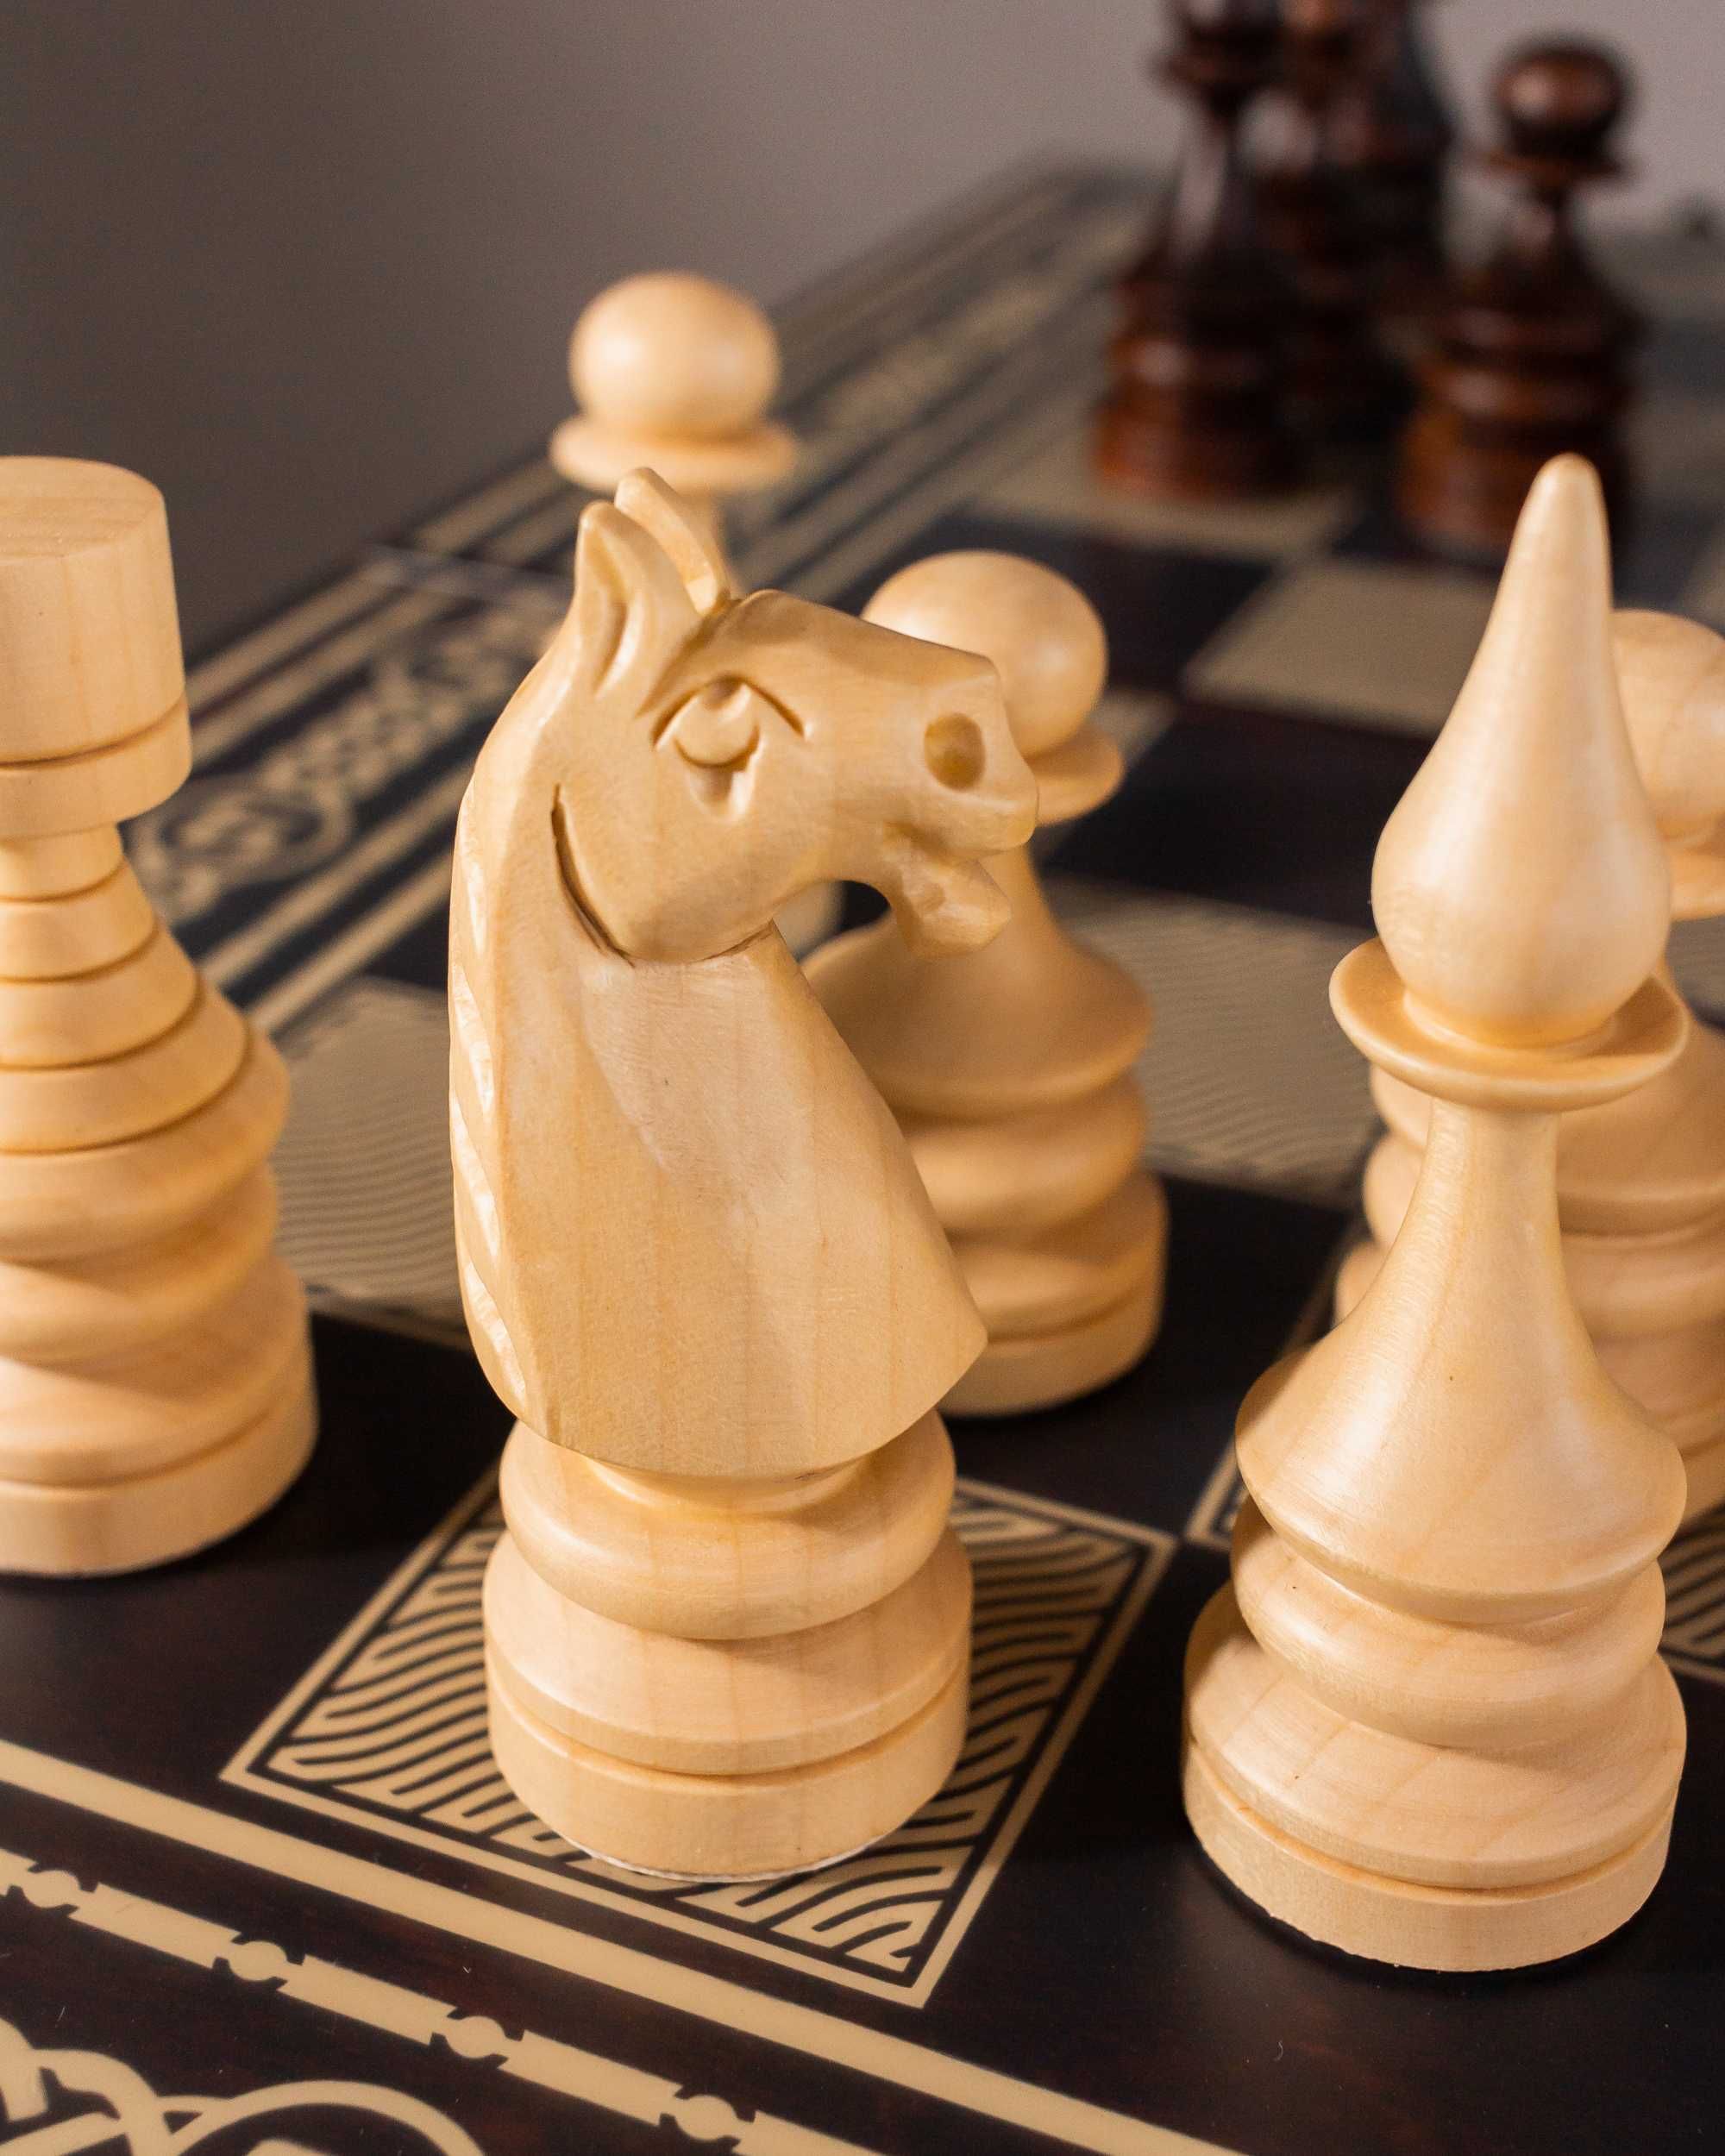 Шахматы из дерева ручной работы премиум качества